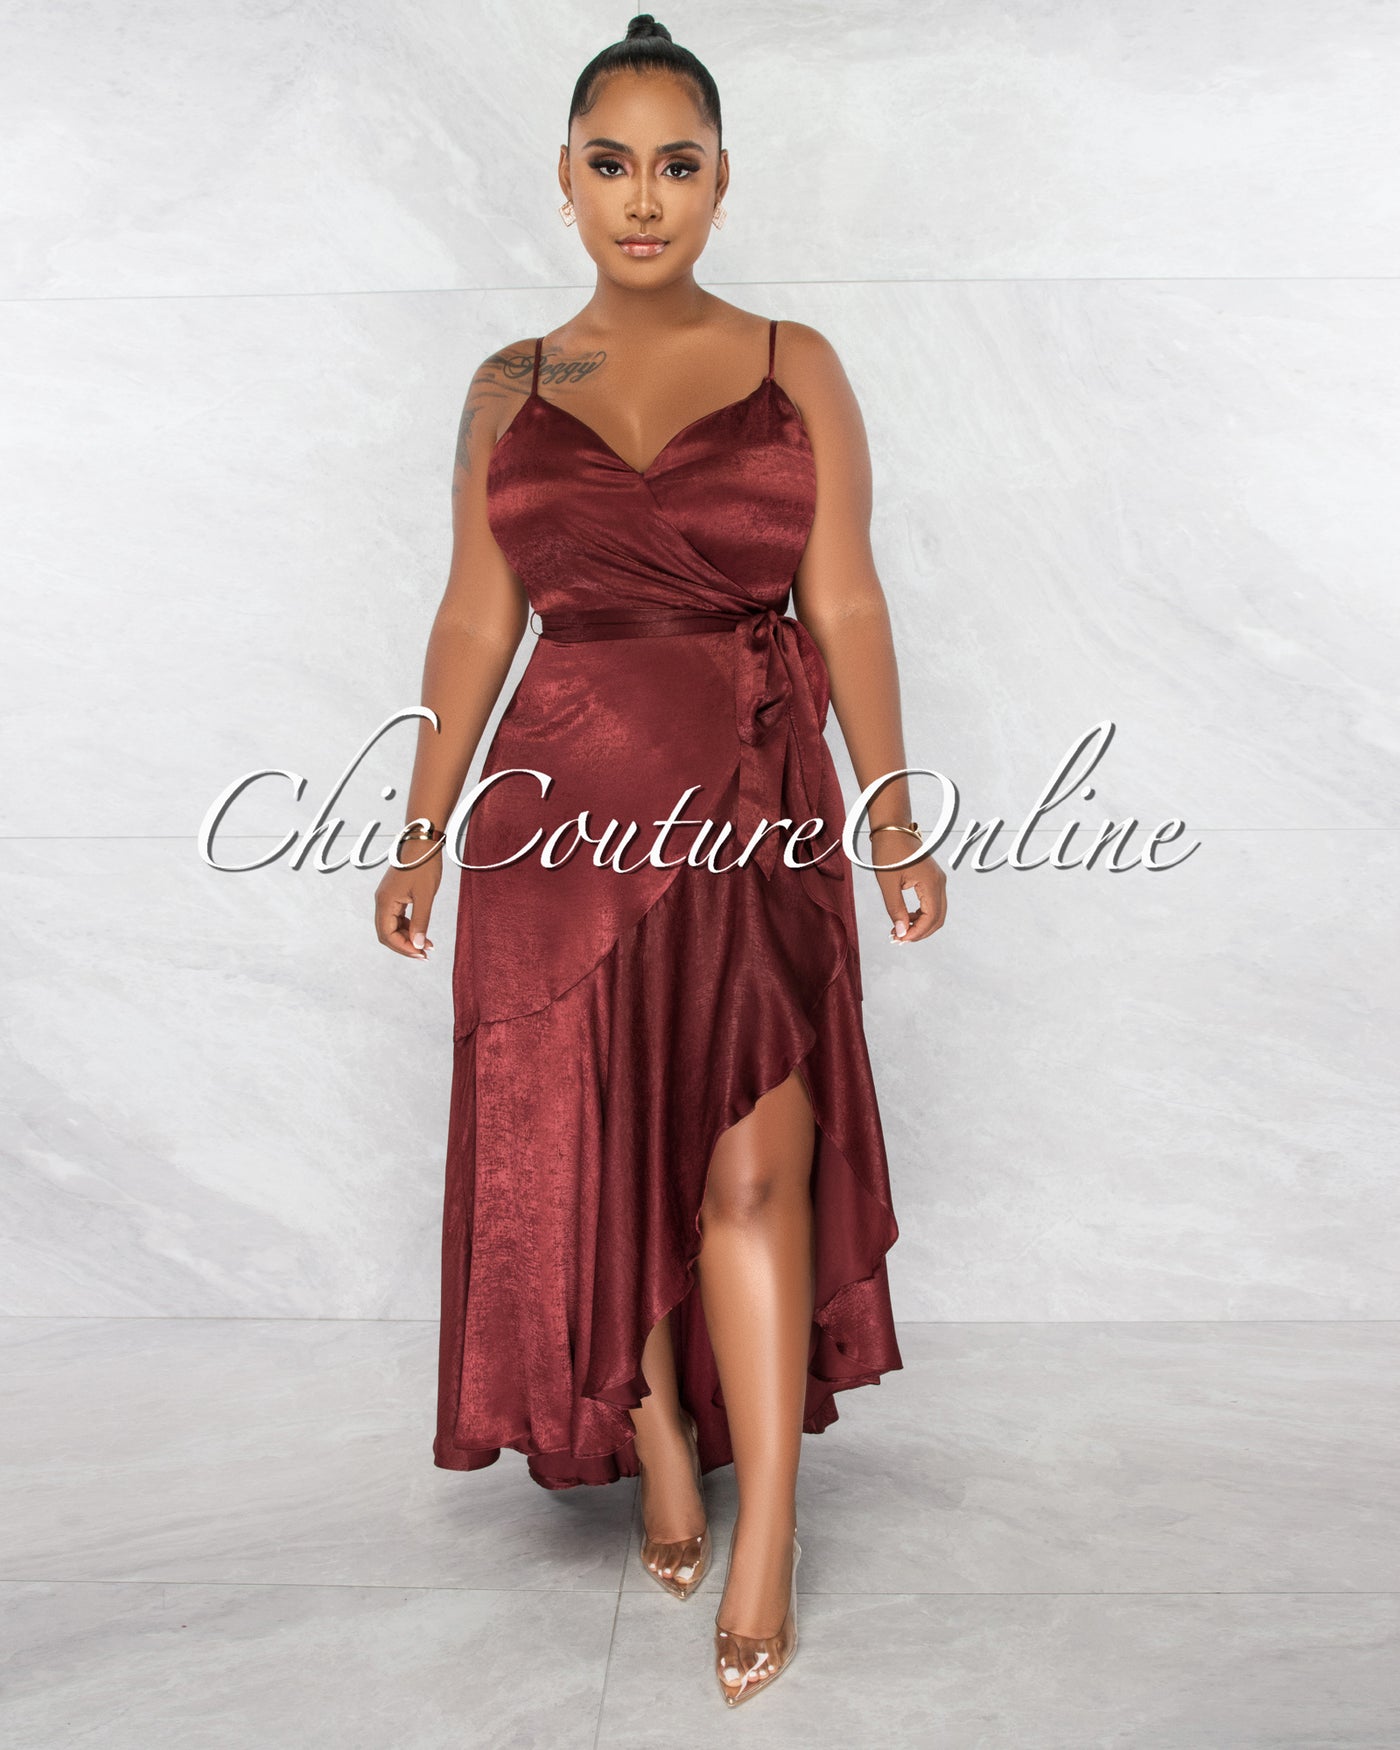 *Alina Maroon Silky Texture Wrap Style Ruffle Dress